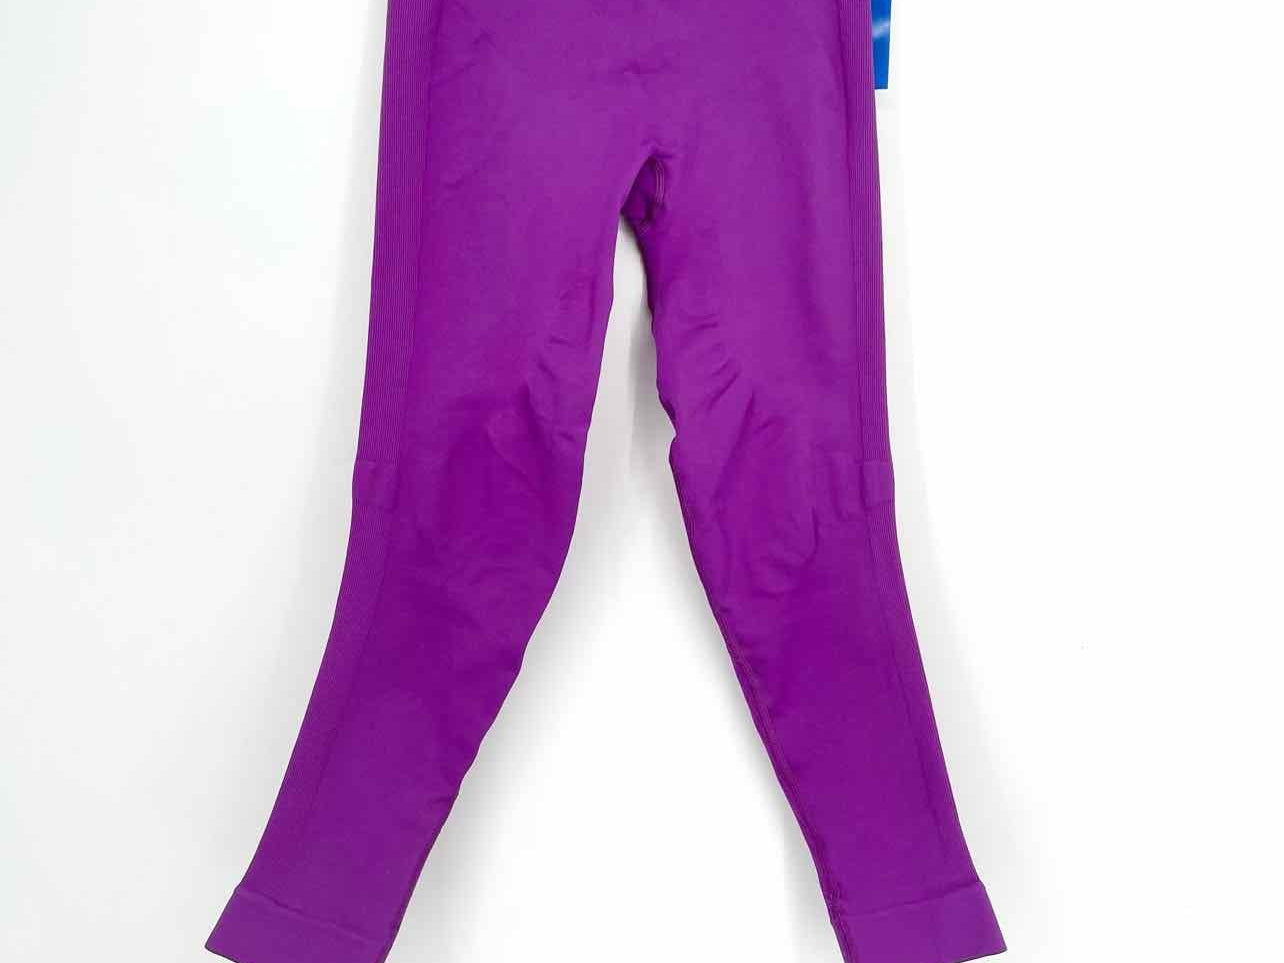 lululemon athletica, Pants & Jumpsuits, Nwt Lululemon Instill Tights  Leggings Hr 25 Size 6 Charged Indigo Purple